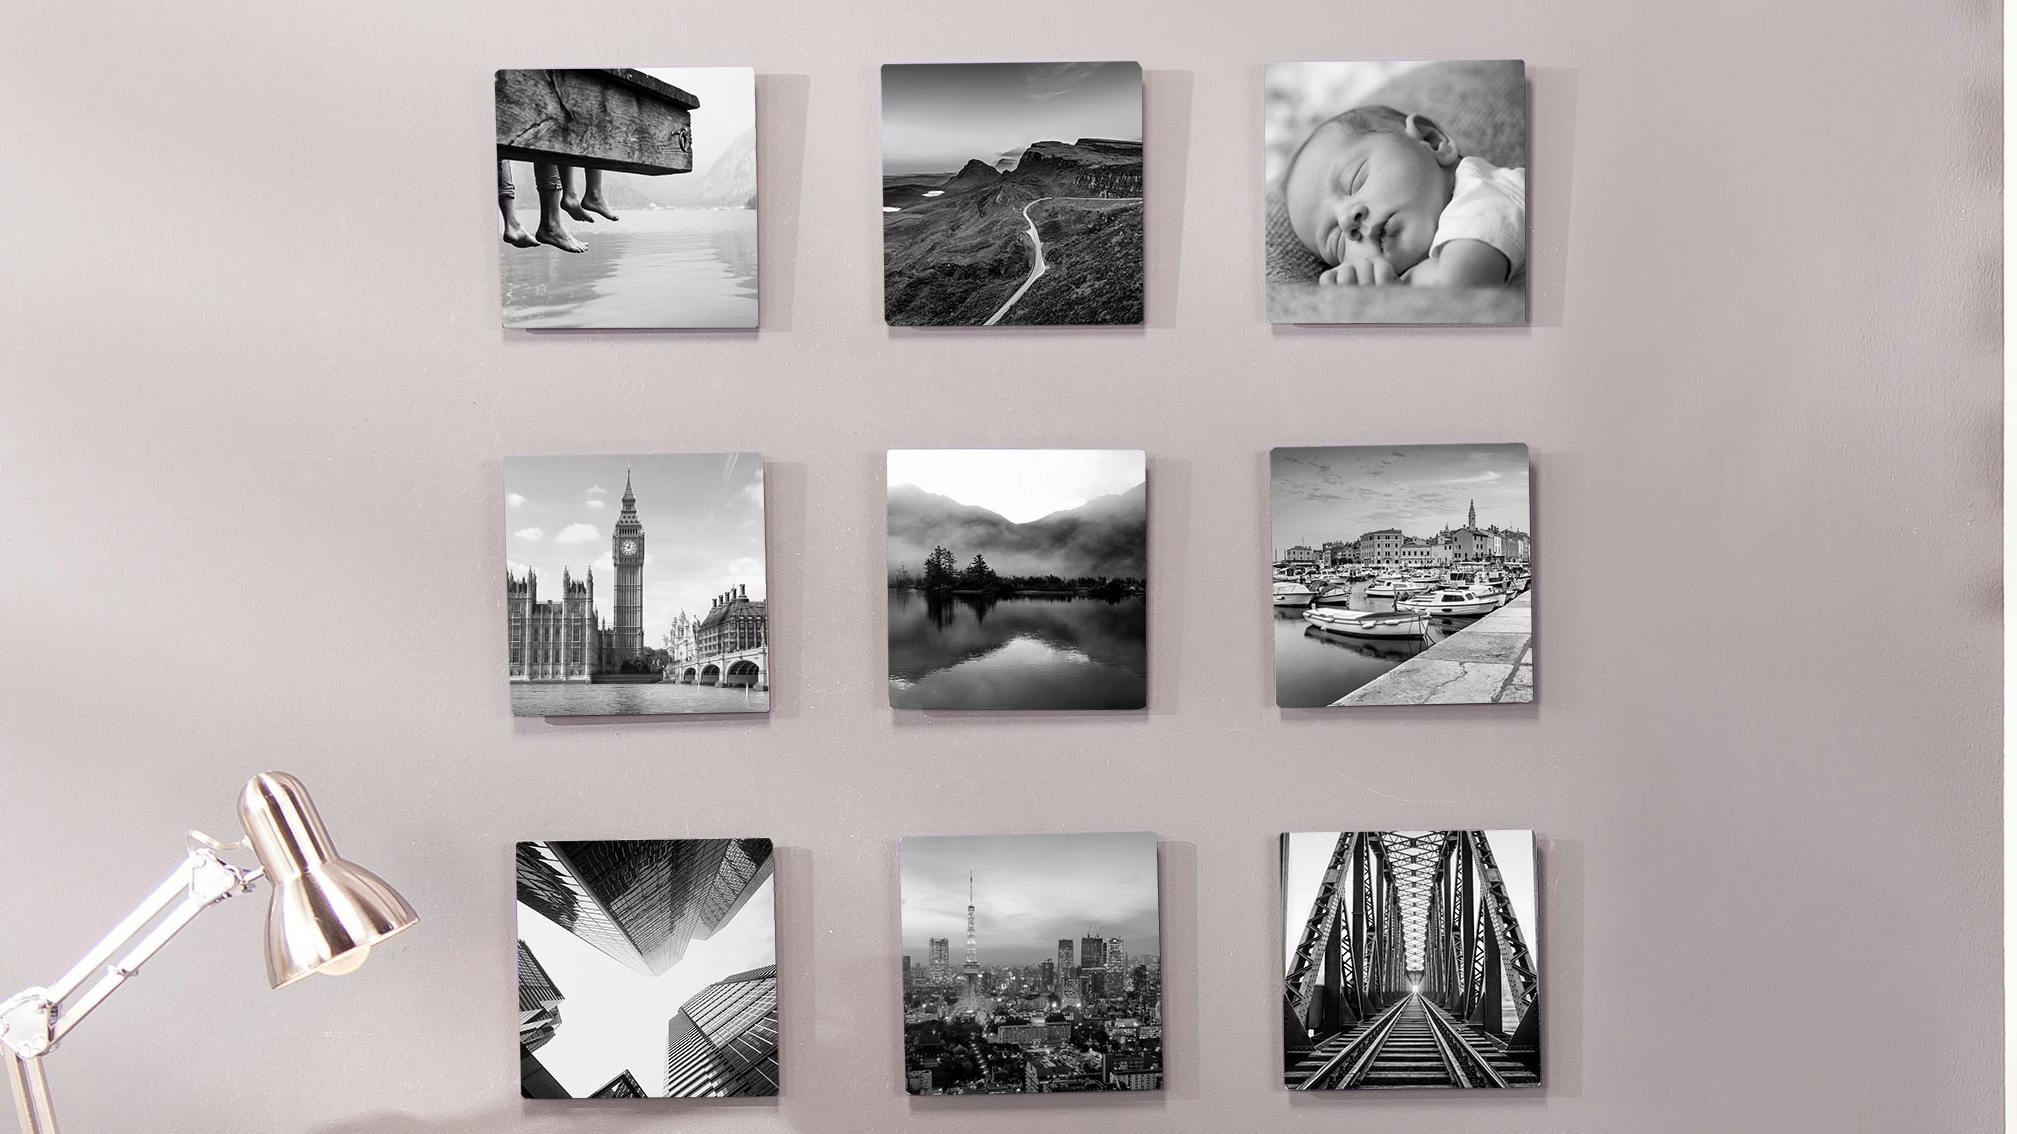 Tableaux photo carrés en noir et blanc, accrochés à un mur